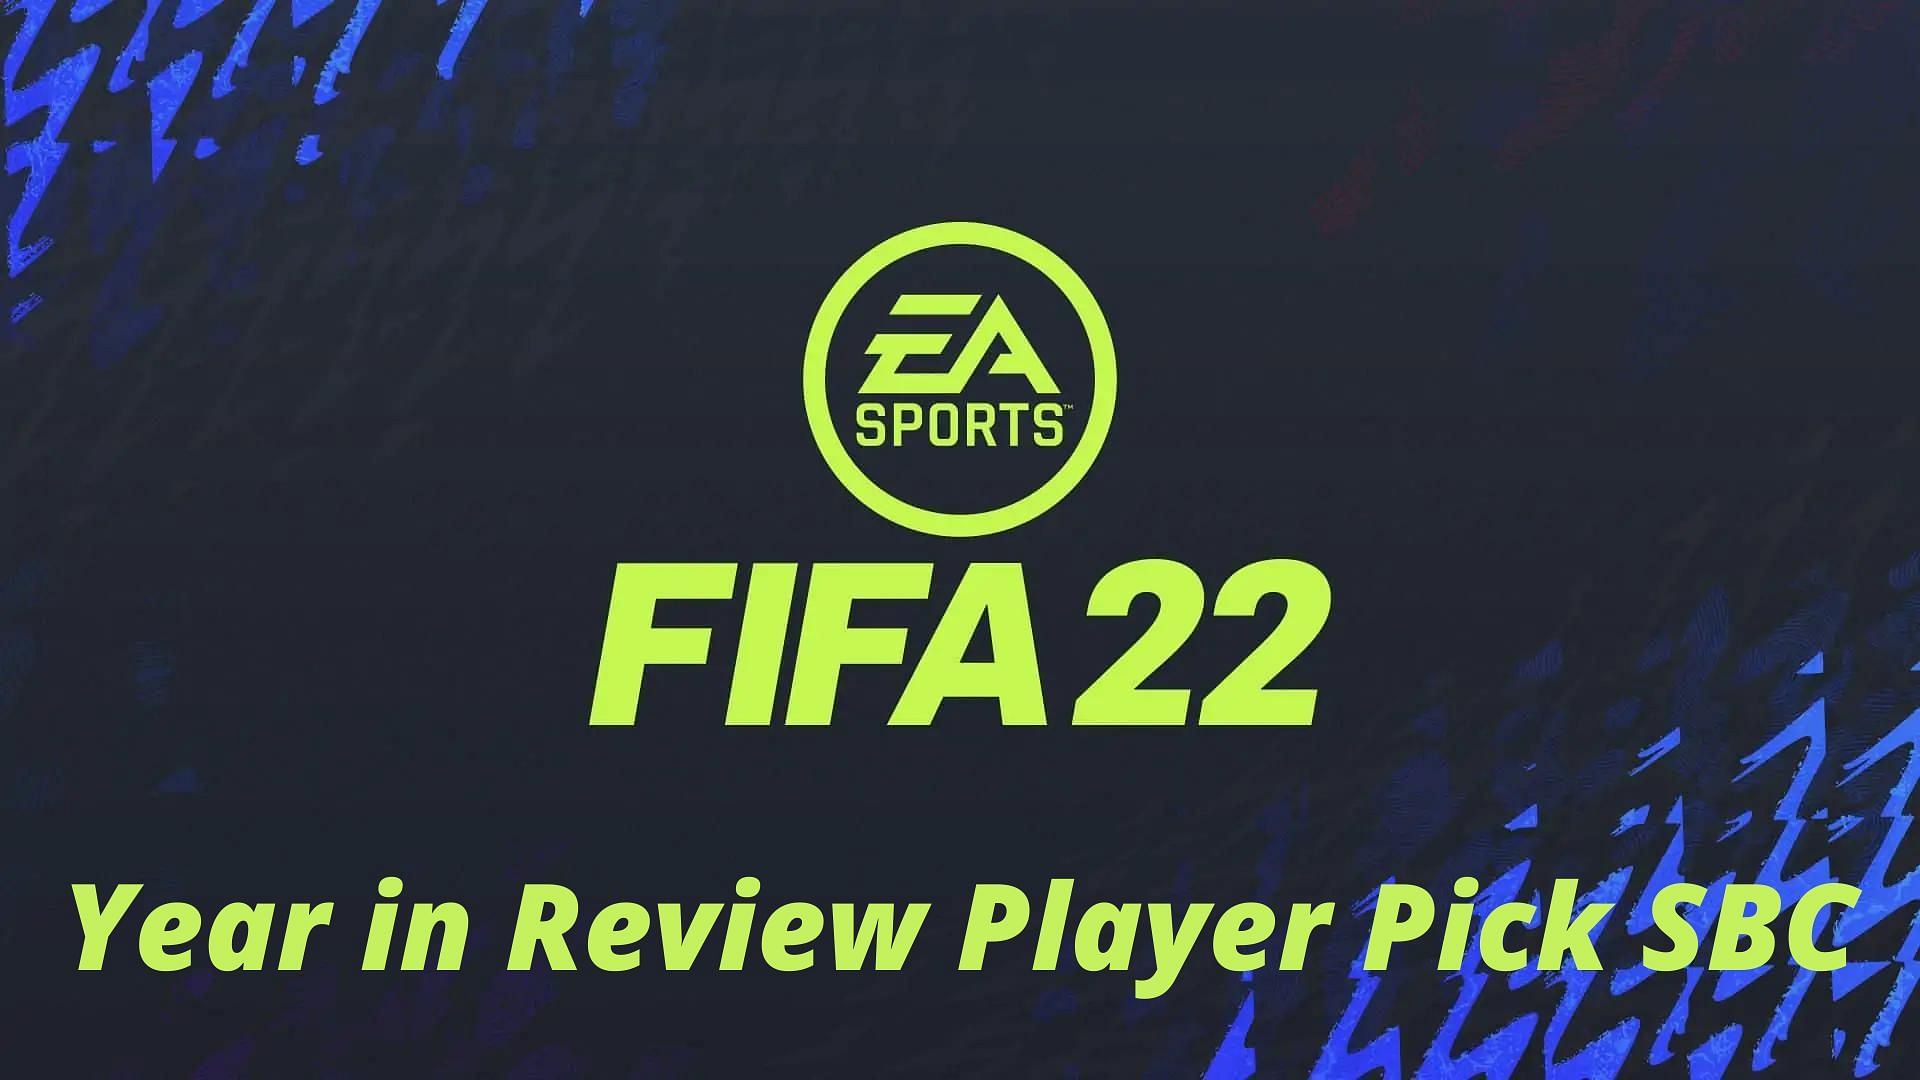 FIFA 22 has got a unique SBC (Image via EA Sports)